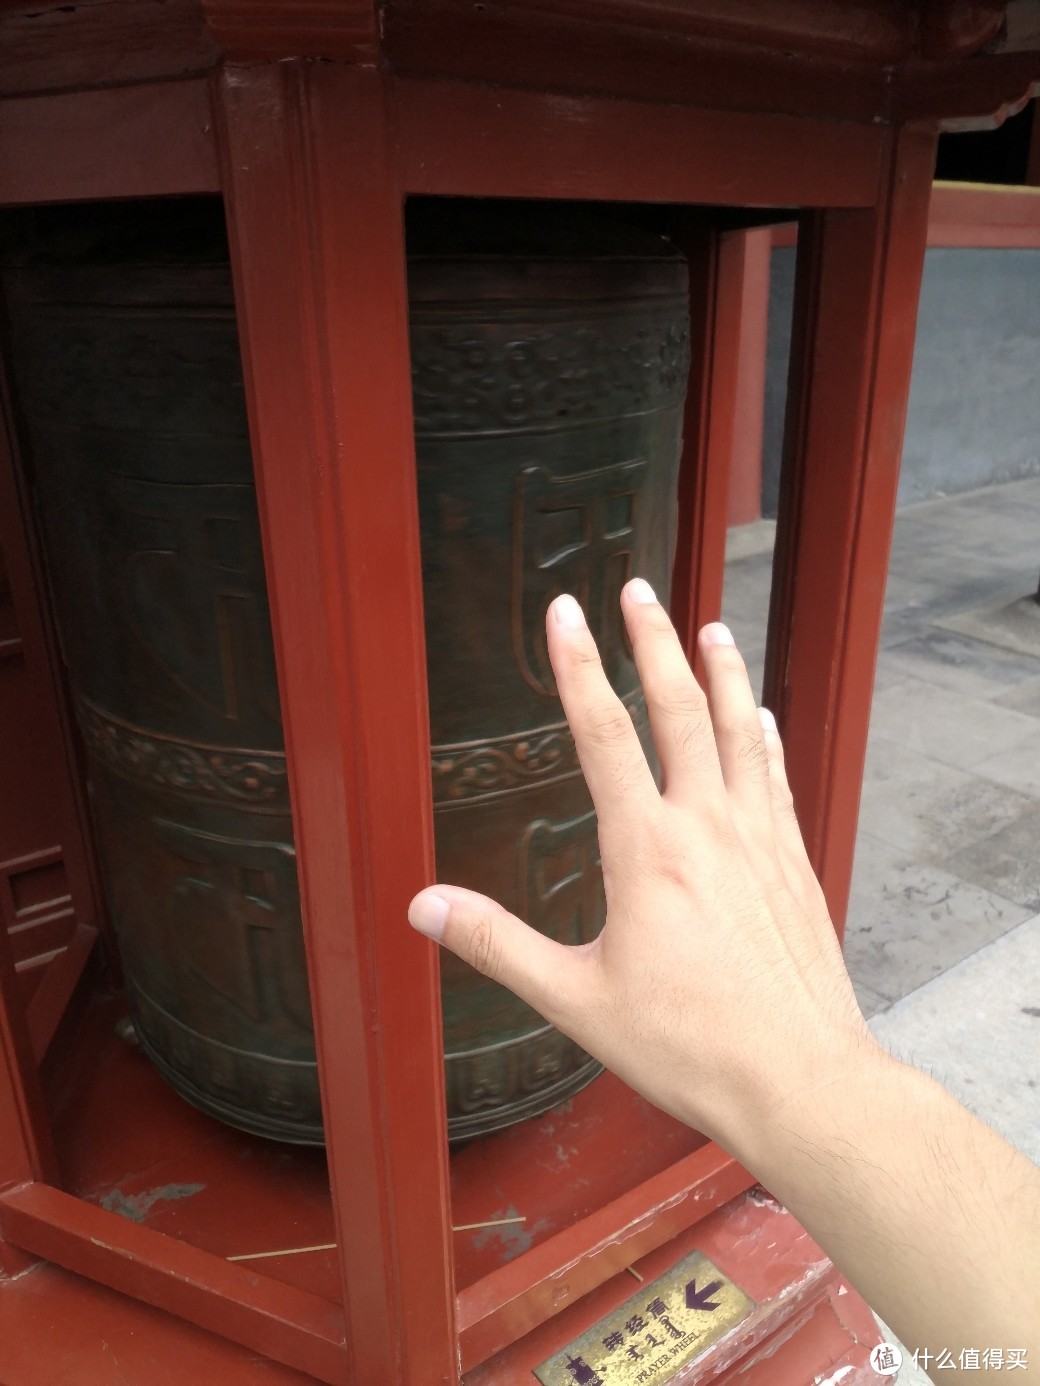 雍和宫 北方最大的喇嘛教庙宇之烧香游记